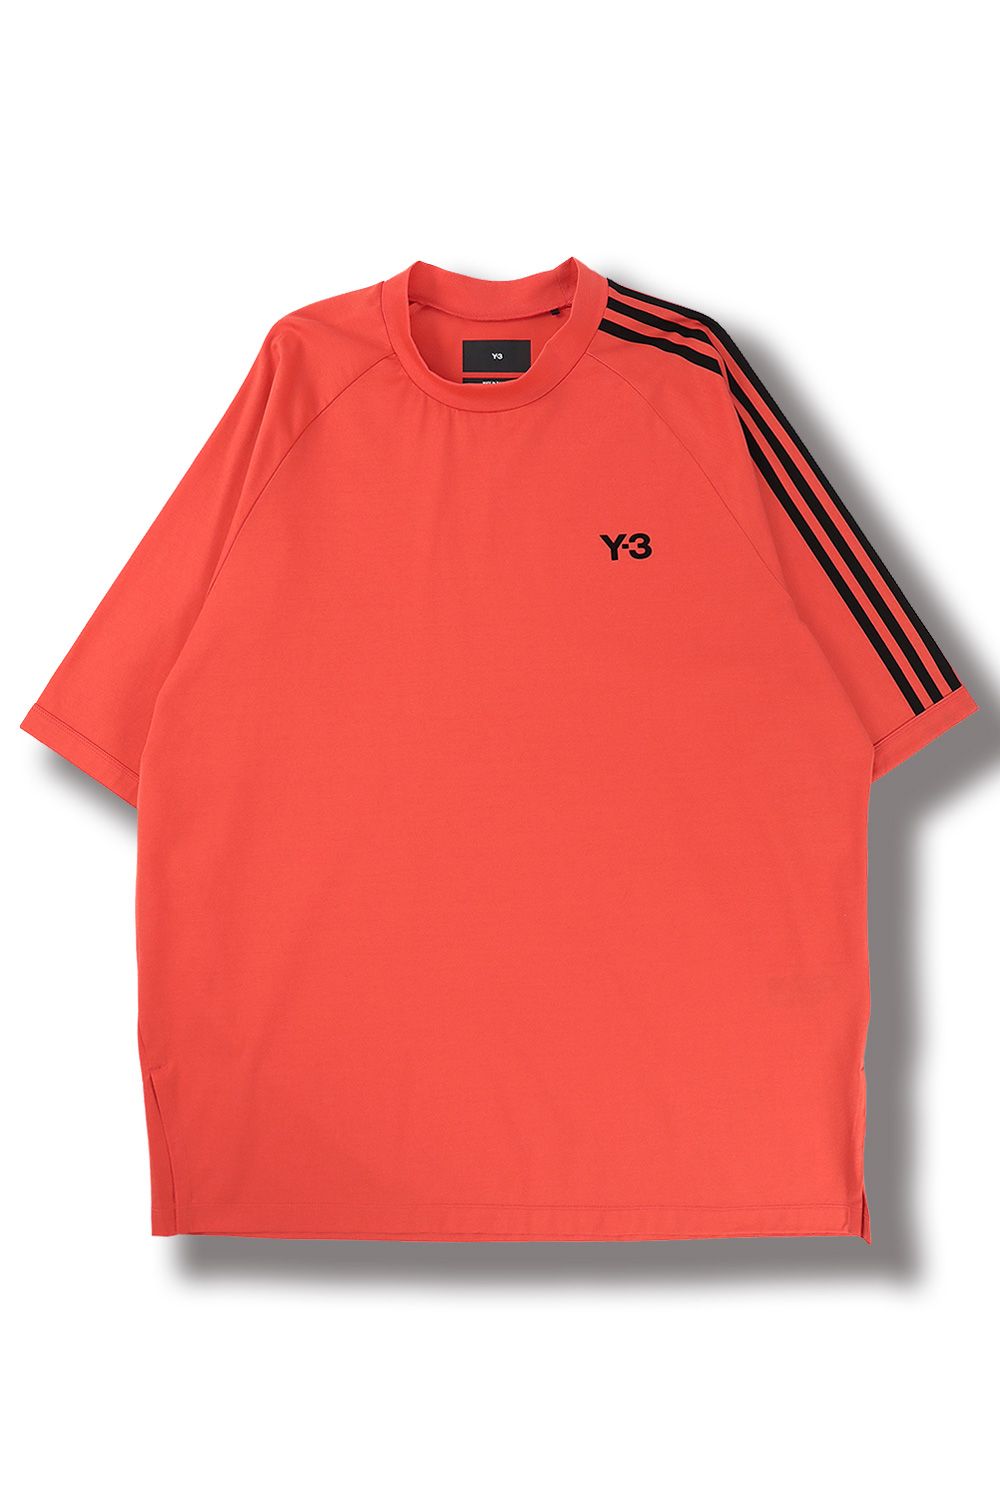 週末限定価格 Y-3 Tシャツ